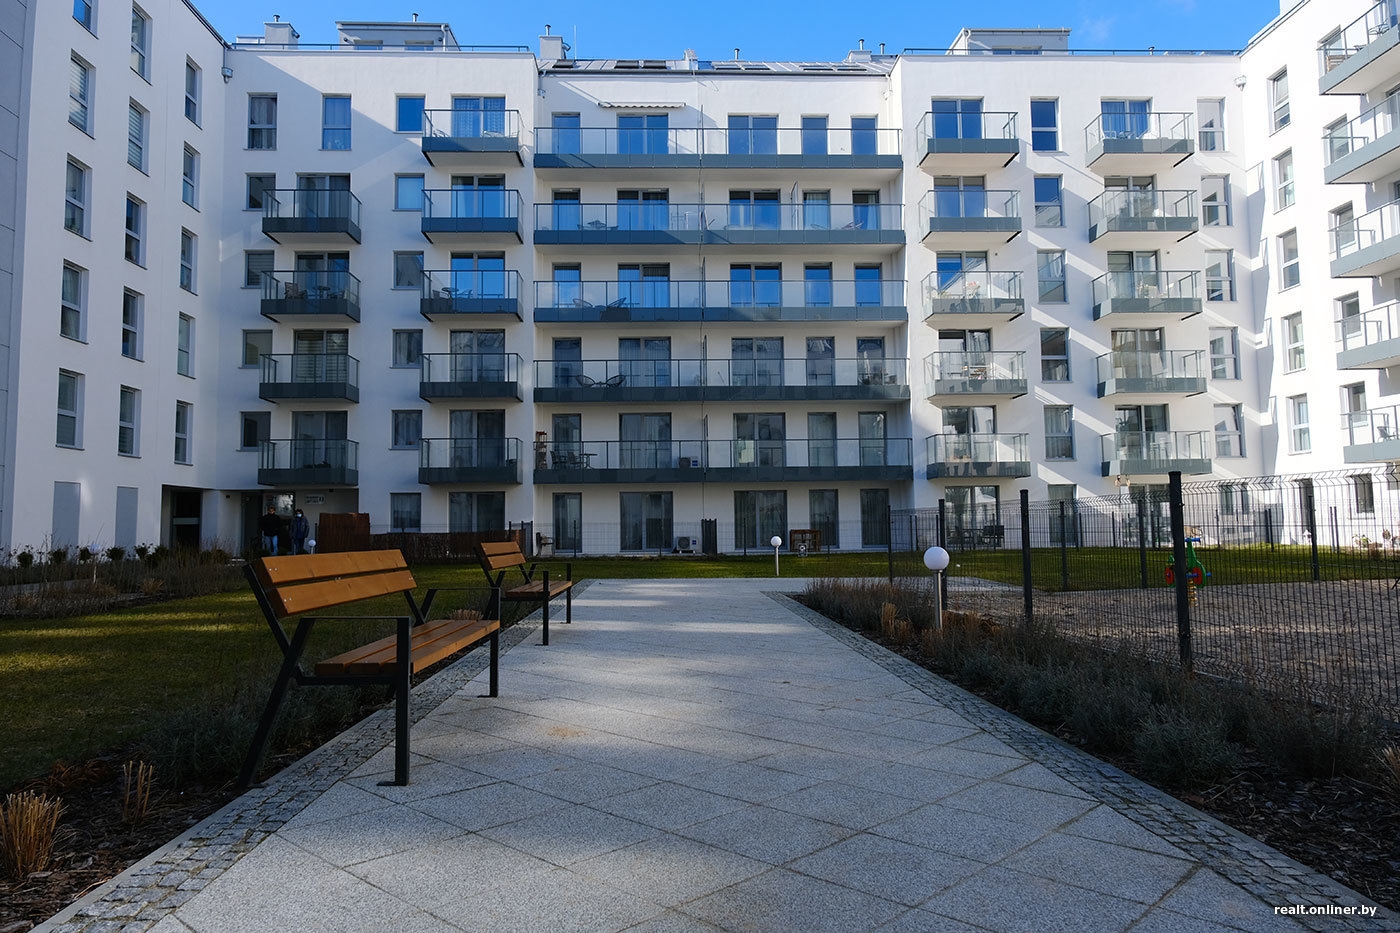 Іпотека на квартиру в Польщі: у яких містах найдешевше придбати житло